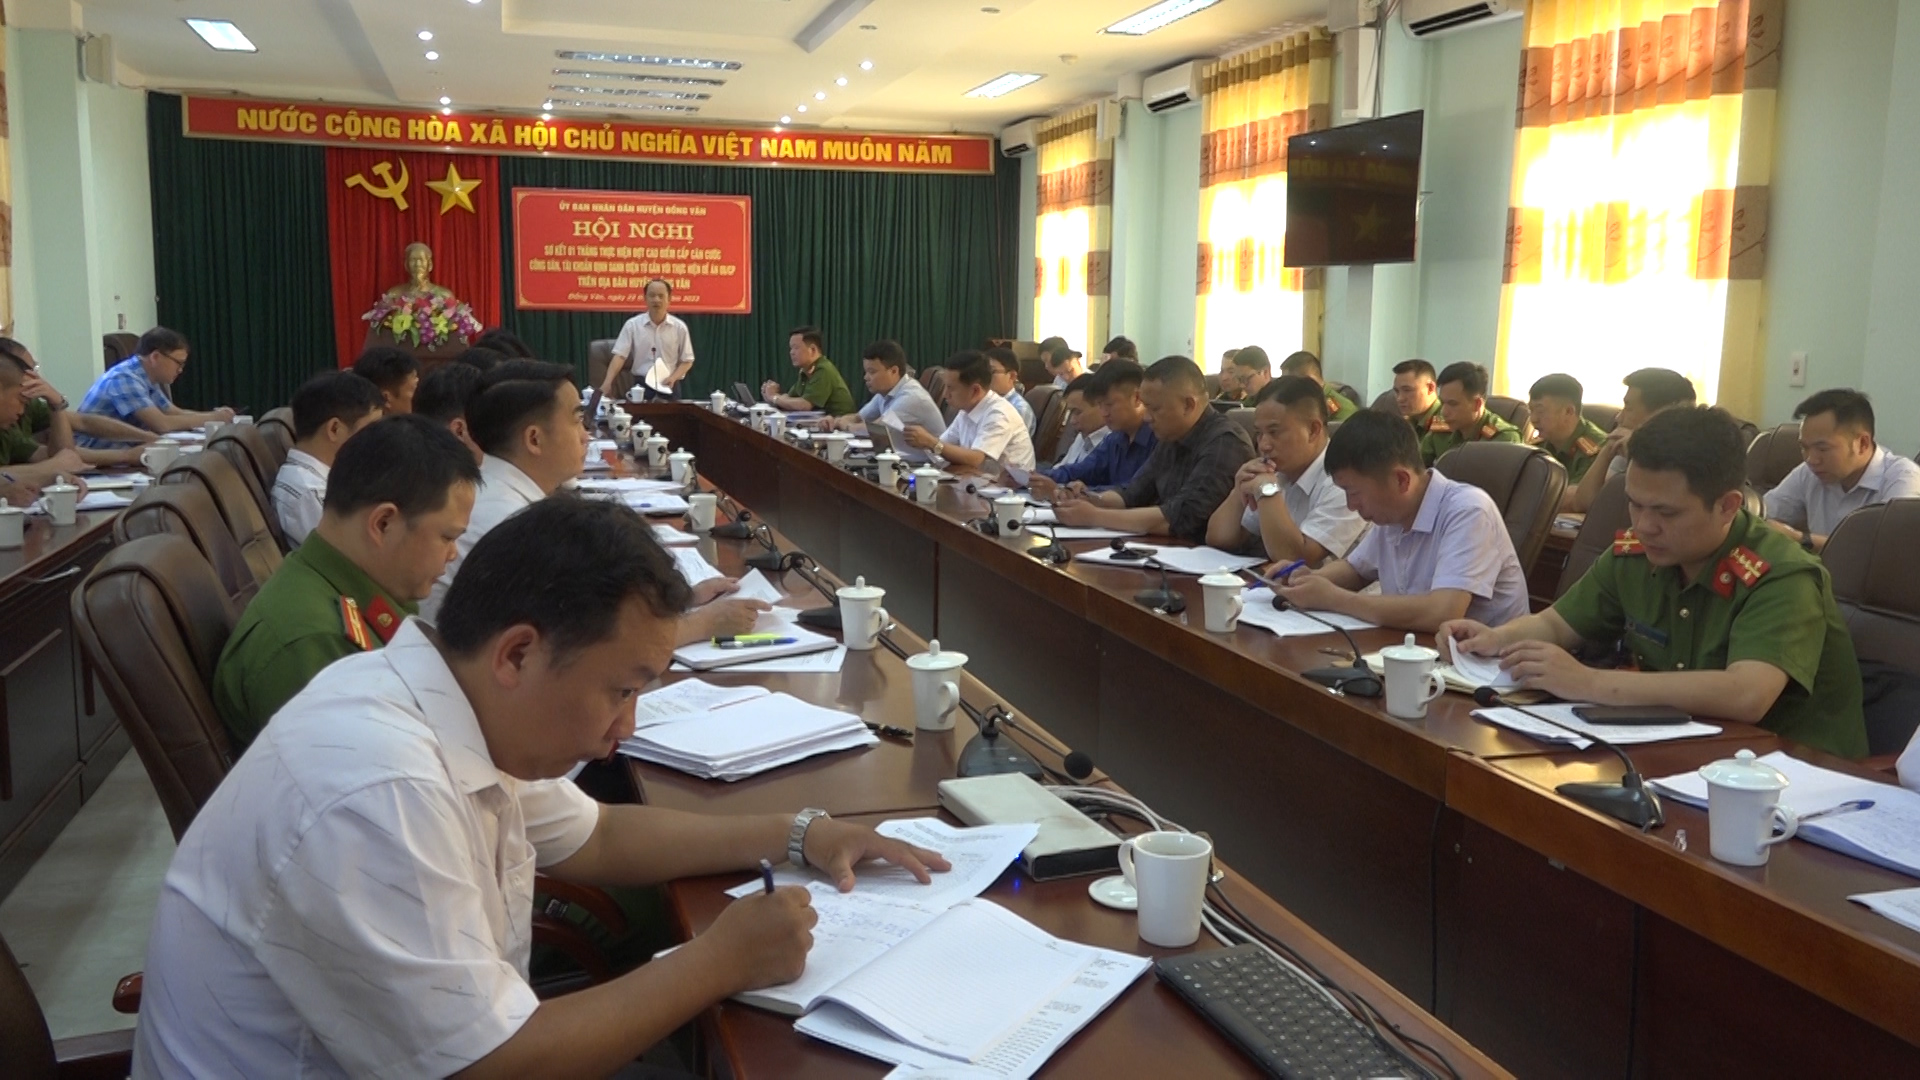 Hội nghị sơ kết 01 tháng thực hiện đợt cao điểm cấp Căn cước công dân, định danh điện tử gắn với đề án 06 trên địa bàn huyện Đồng Văn